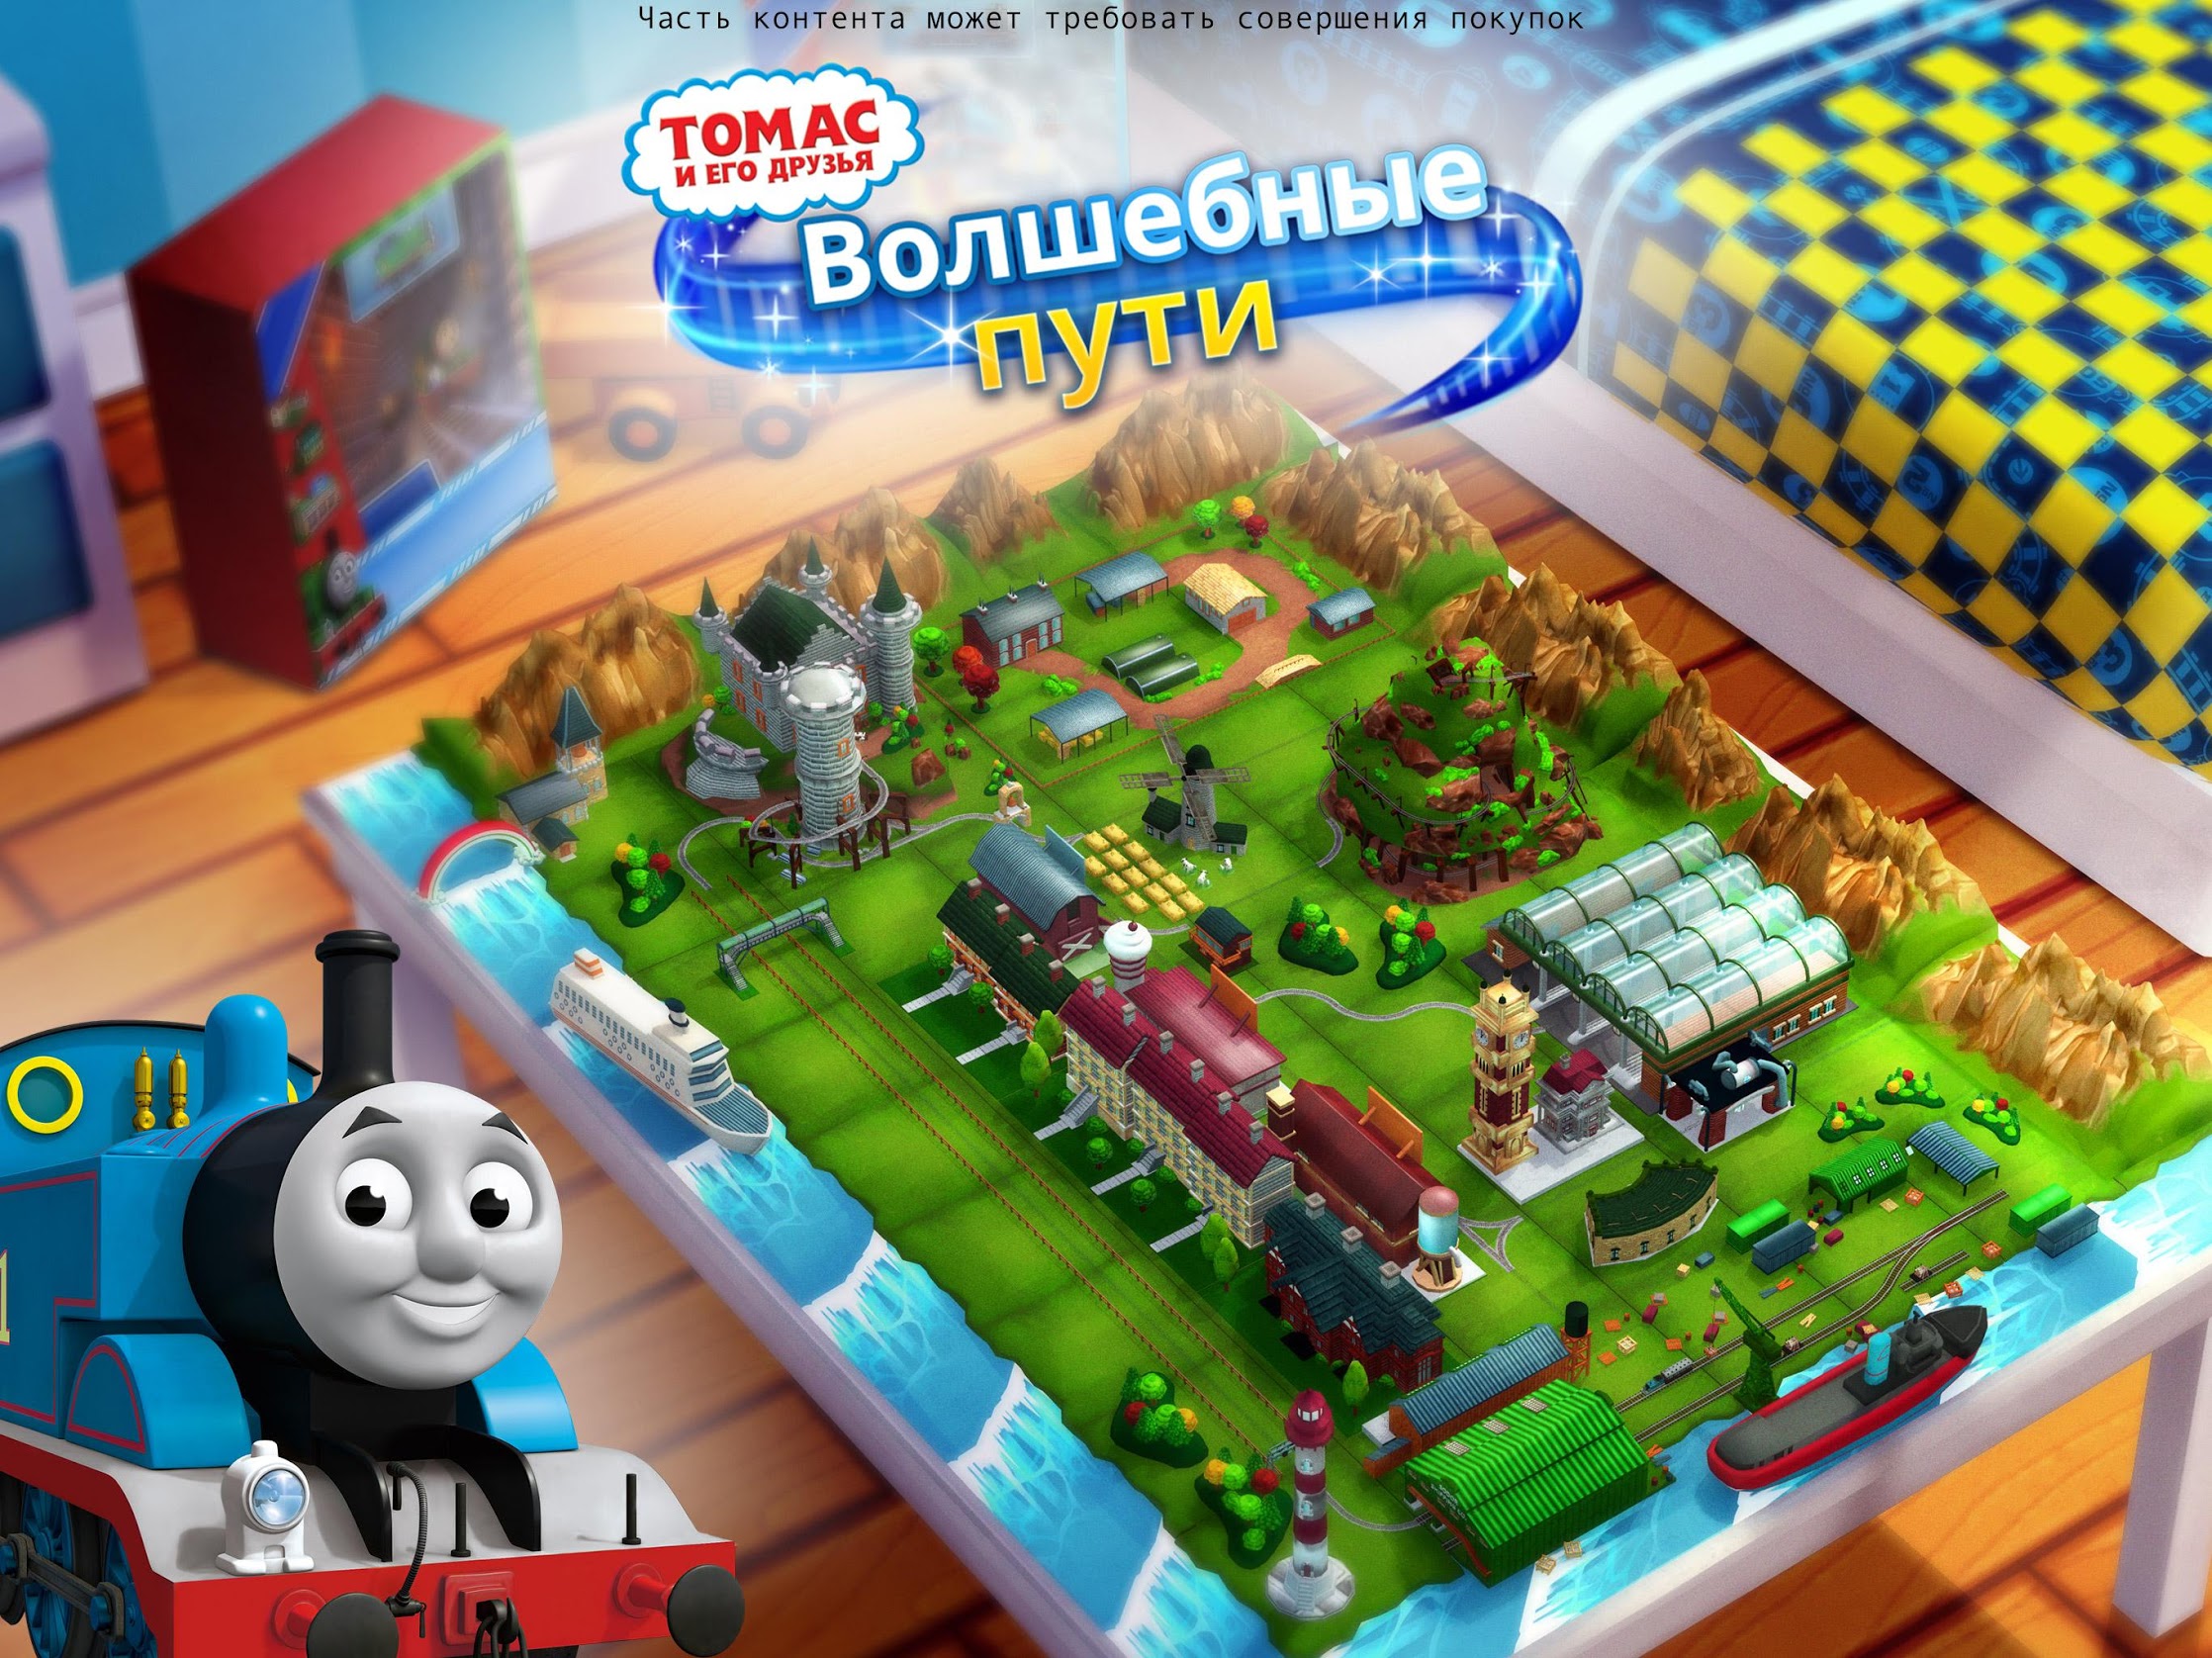 Thomas and friends games. Thomas и его друзья: волшебные пути.